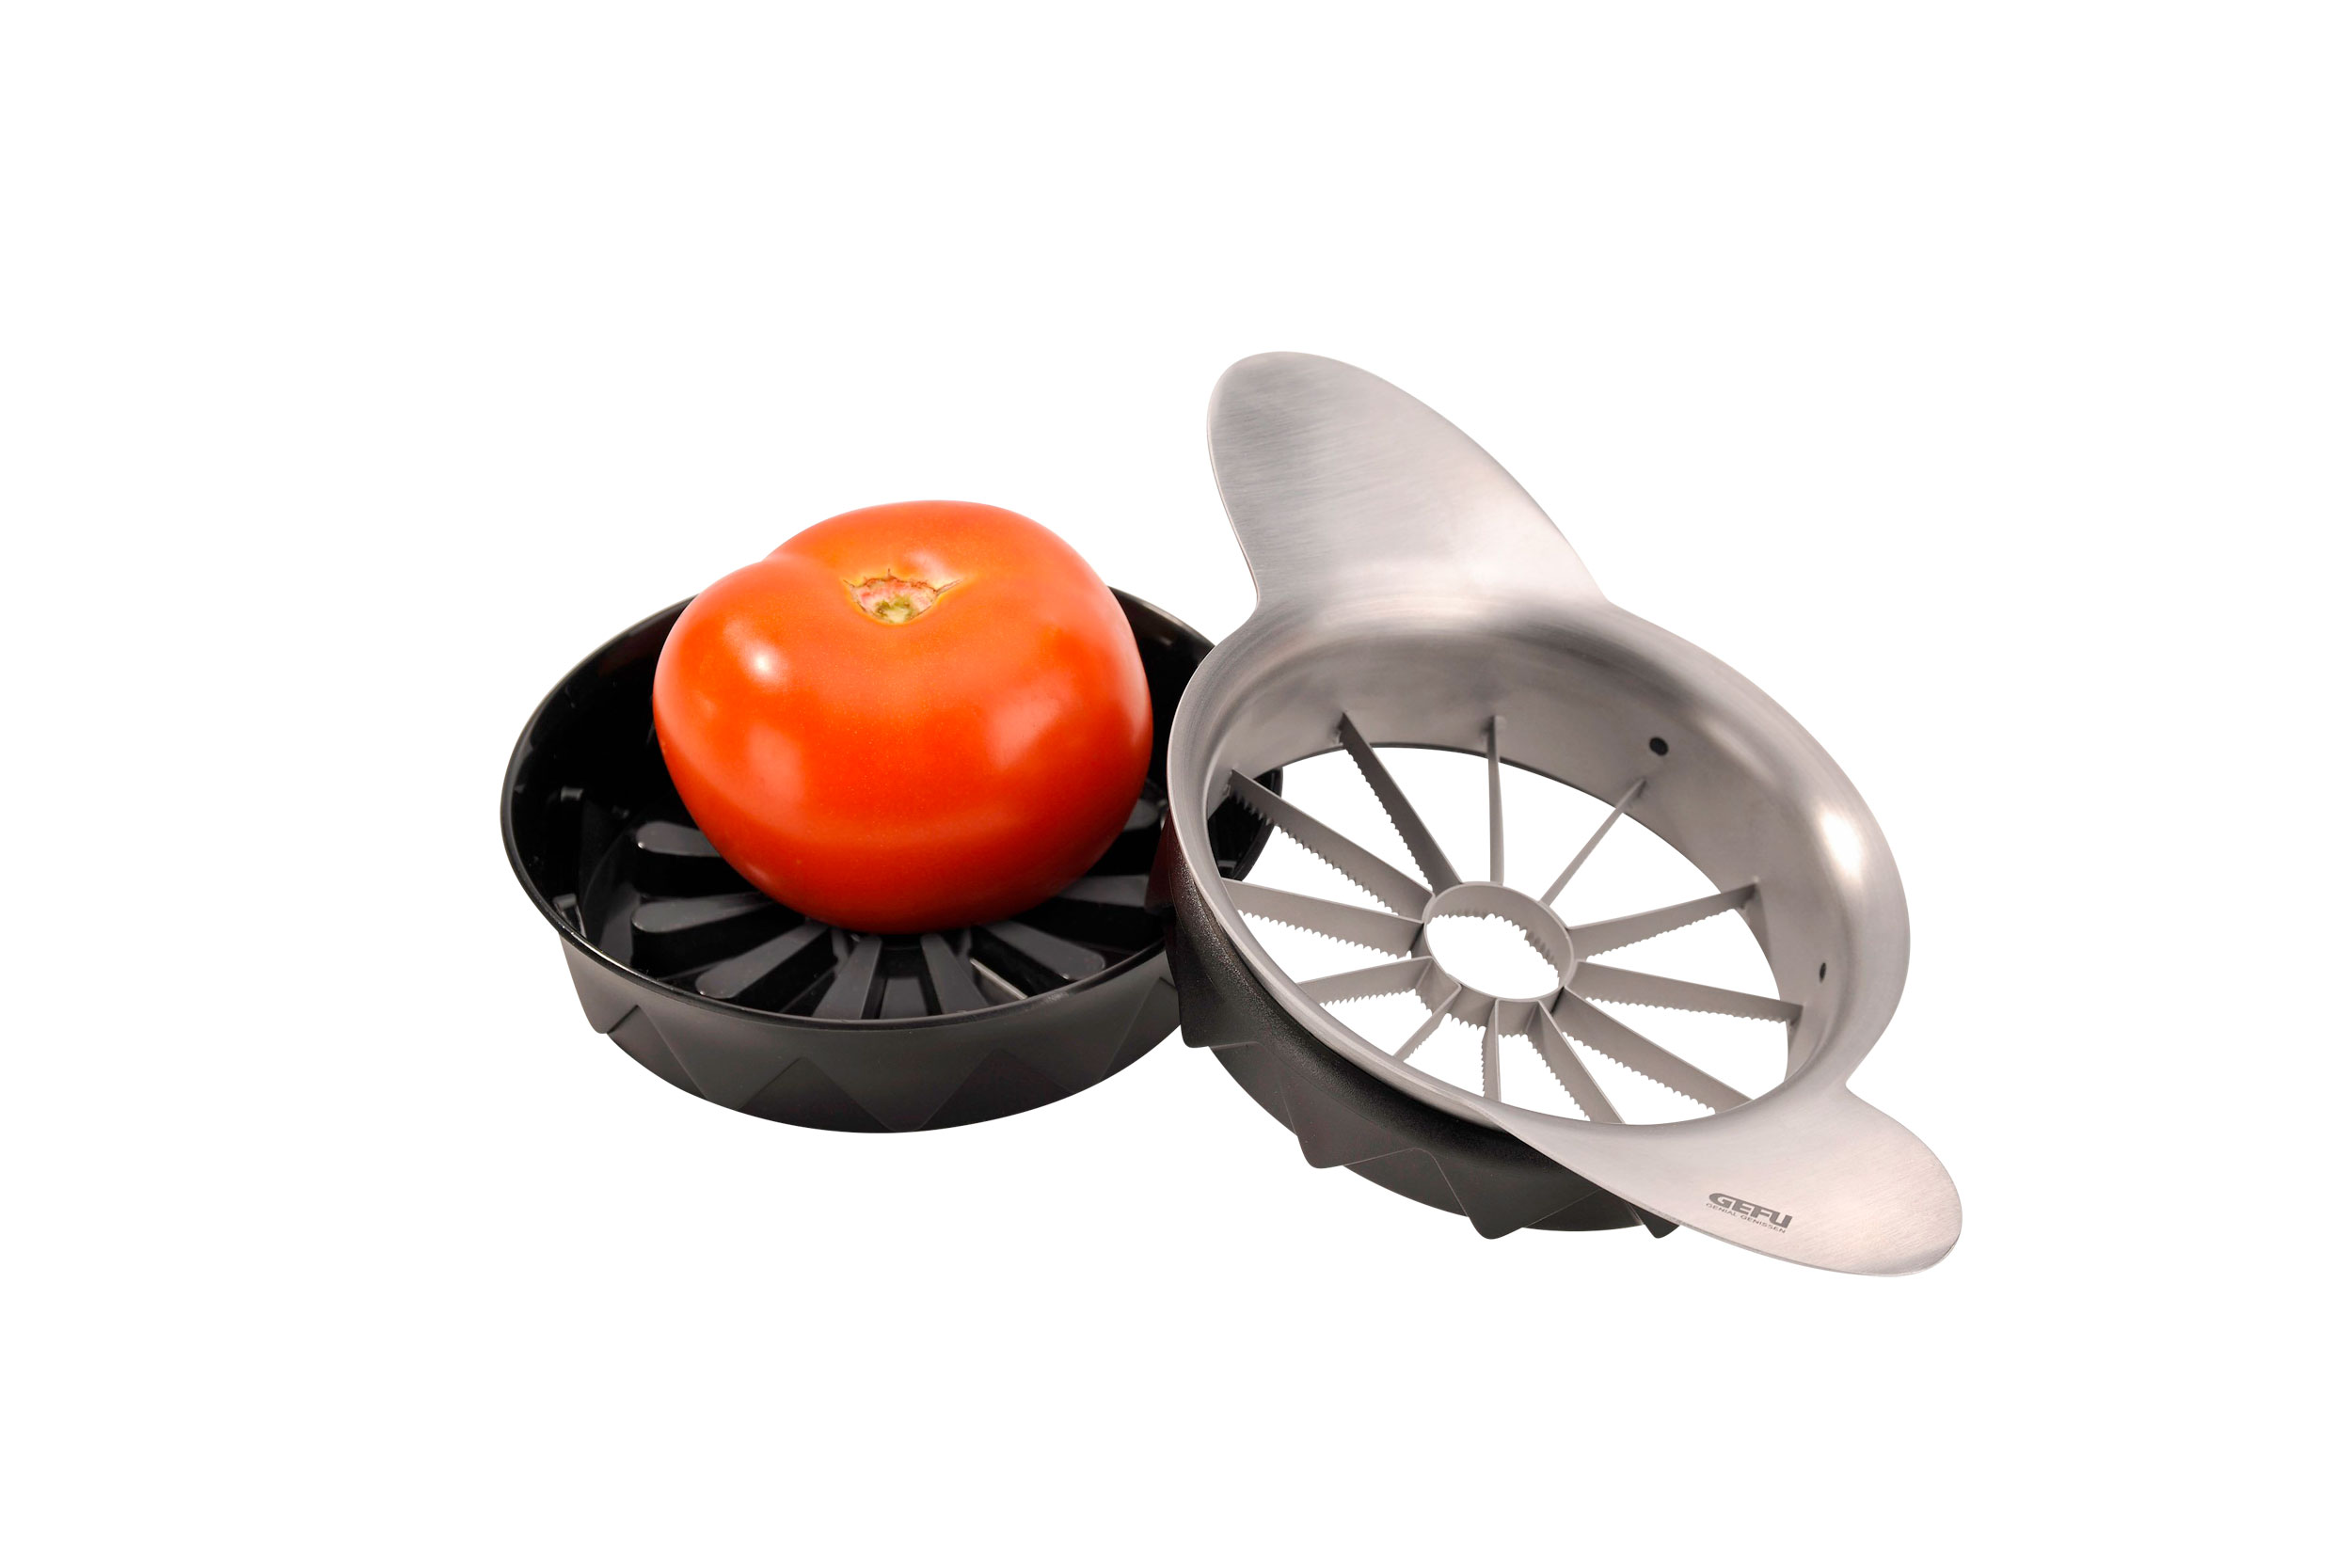 Gefu Tomaten-/Apfelteiler